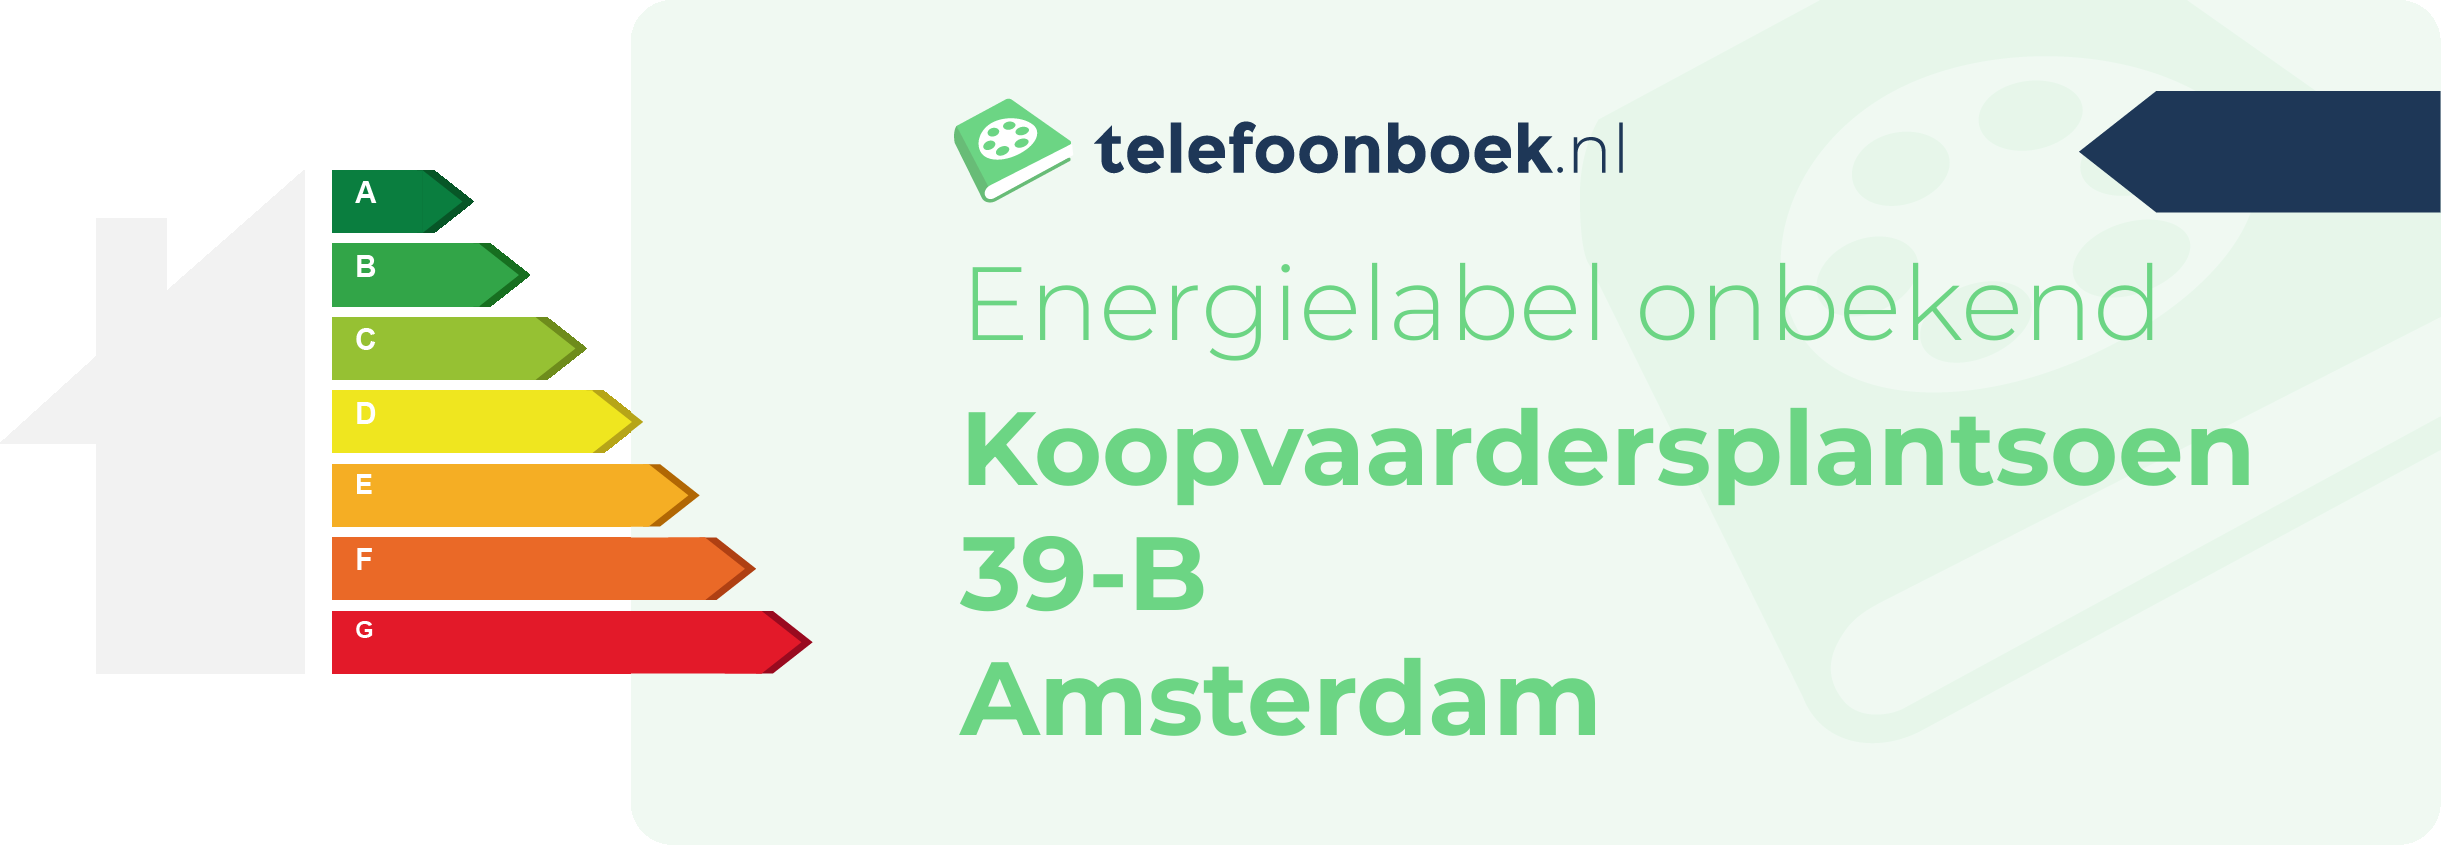 Energielabel Koopvaardersplantsoen 39-B Amsterdam